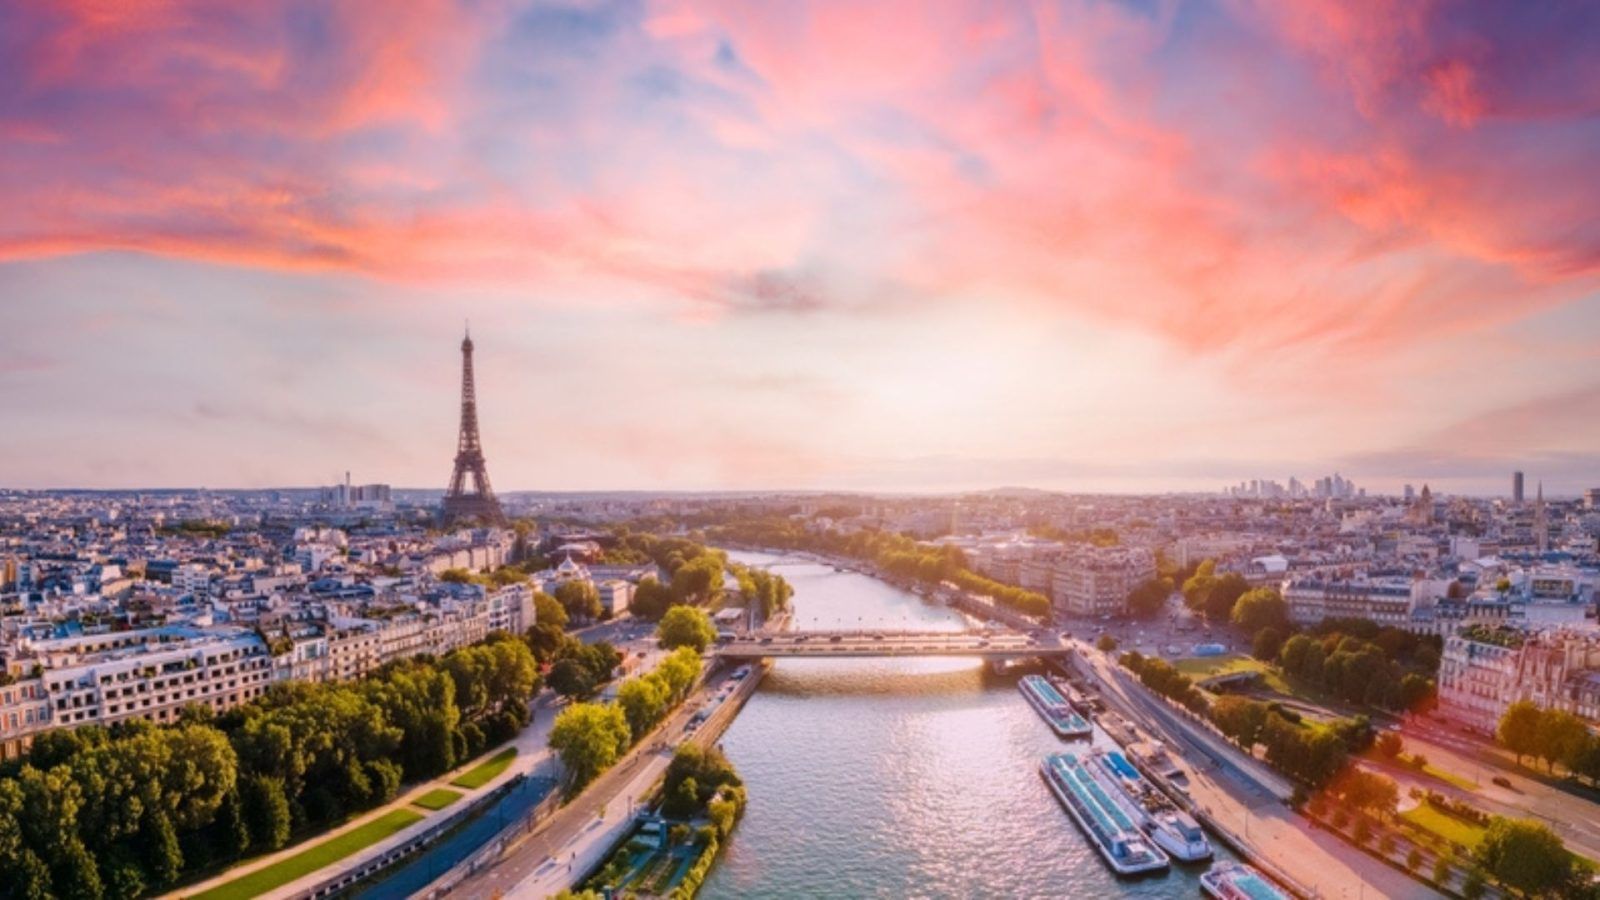 14 activités amusantes et gratuites à faire à Paris, France – Explorez Paris avec un budget limité